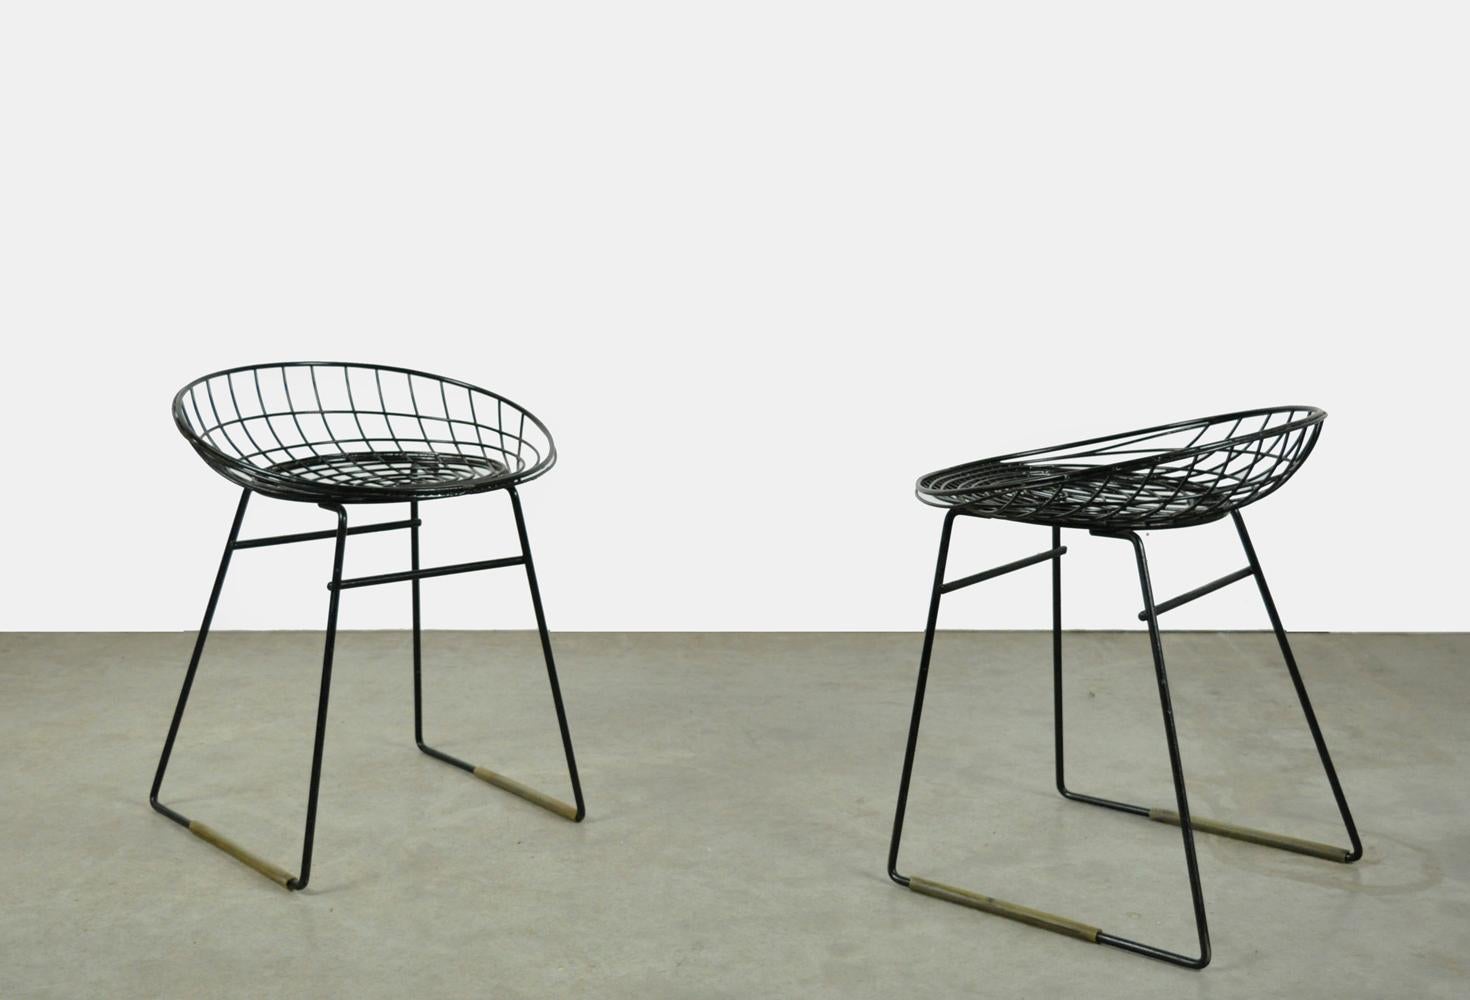 Ensemble de deux tabourets en fil d'acier, modèle KM05, conçus par Cees Braakman et Adriaan Dekker pour Pastoe, années 1950. Les fils métalliques sont recouverts d'une couche de plastique noir. Le tabouret métallique a été conçu en collaboration